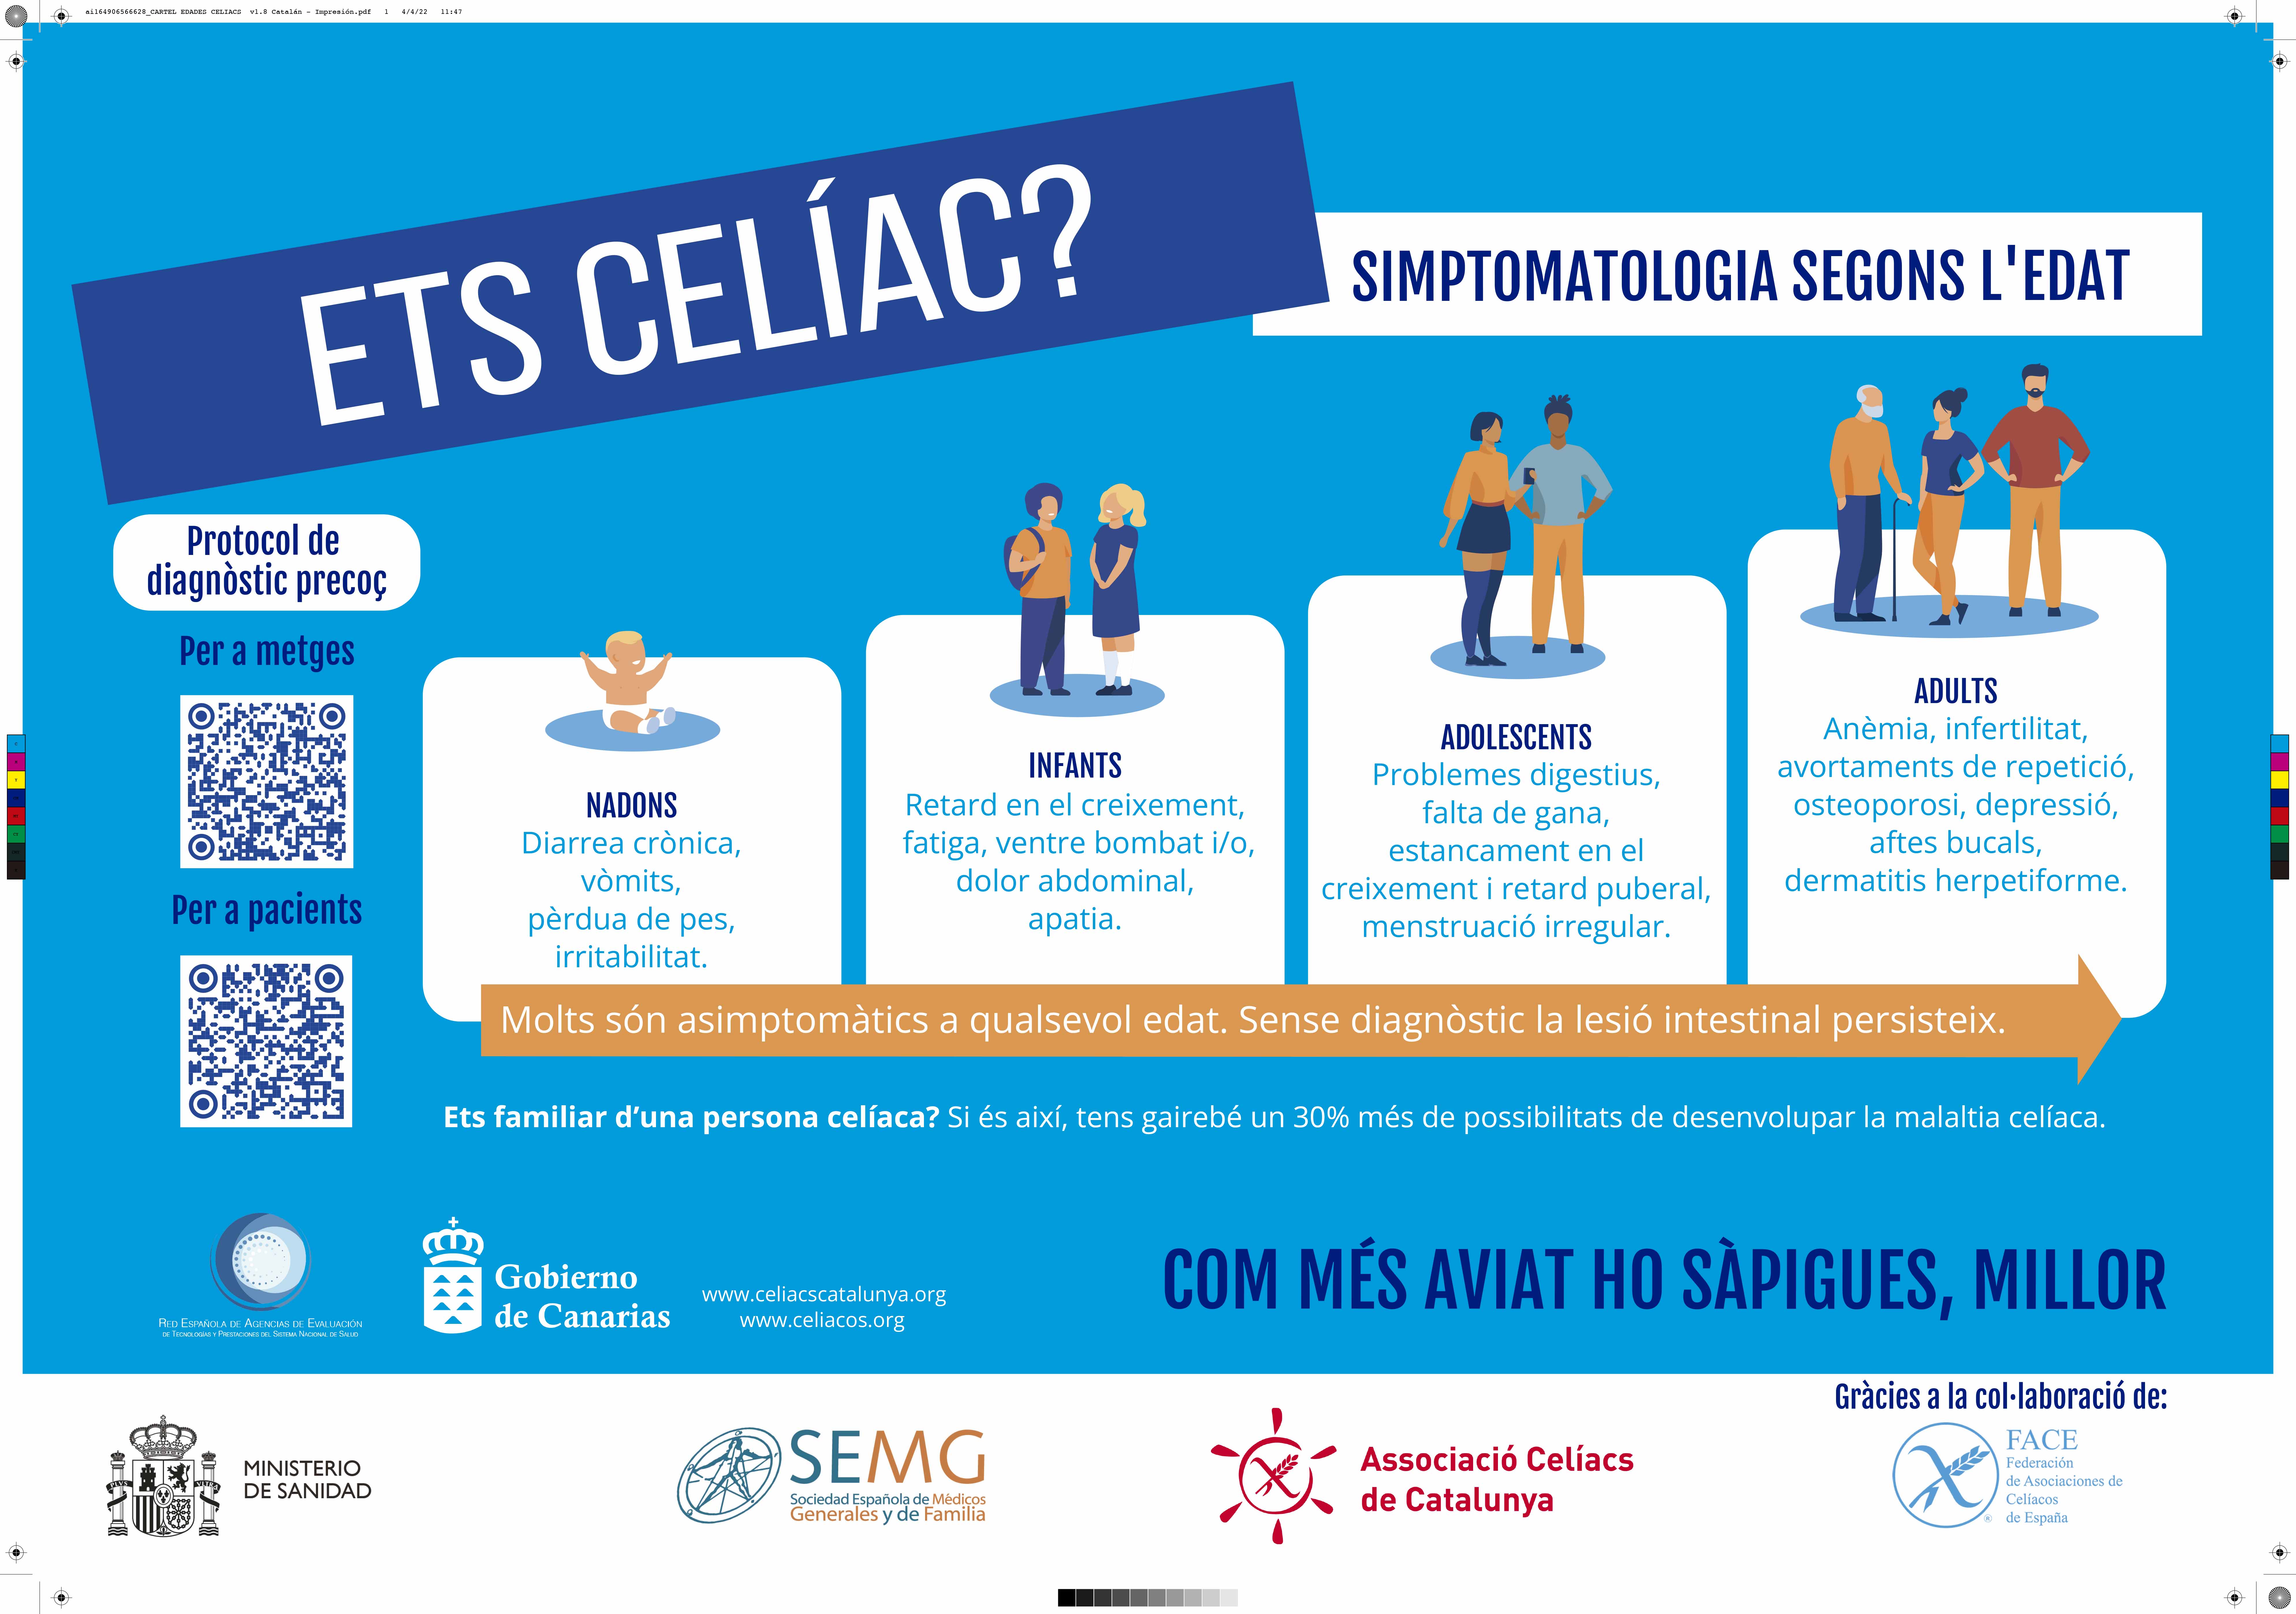 L’Associació Celíacs de Catalunya distribueix cartells en els centres de salut de Catalunya per potenciar el diagnòstic precoç de la malaltia celíaca